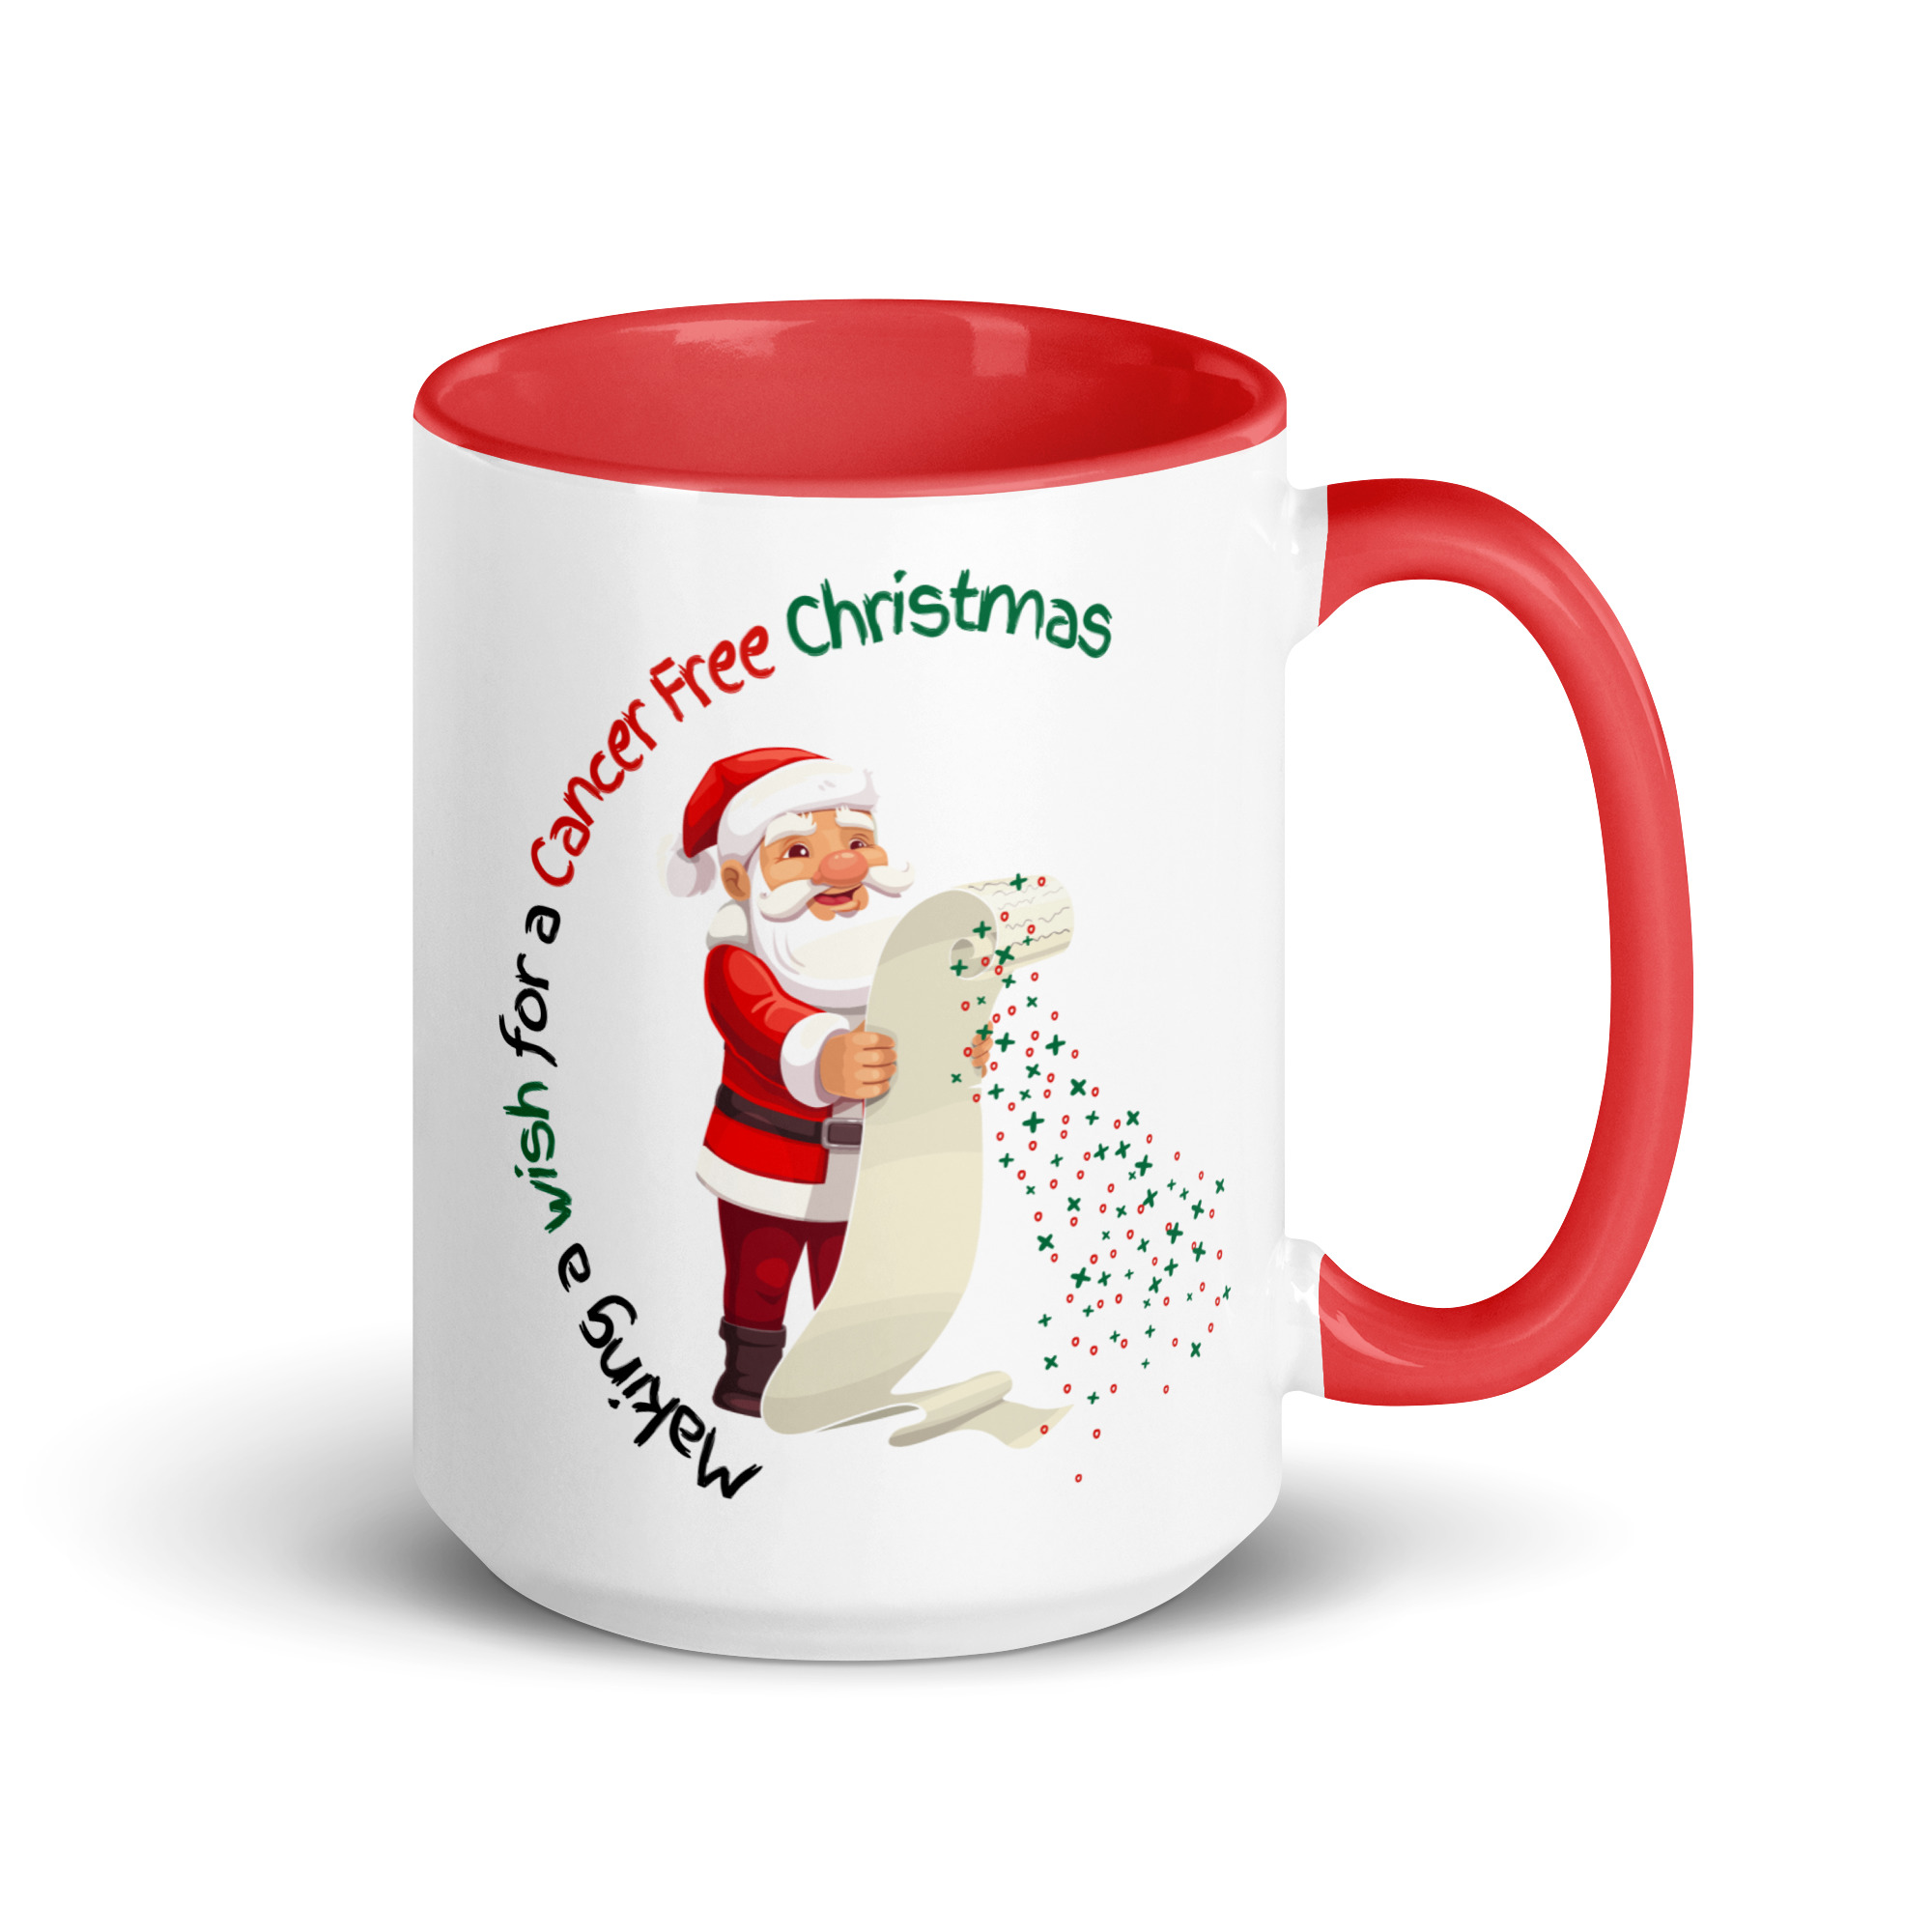 white-ceramic-mug-with-color-inside-red-15-oz-right-6561f668d916e.jpg